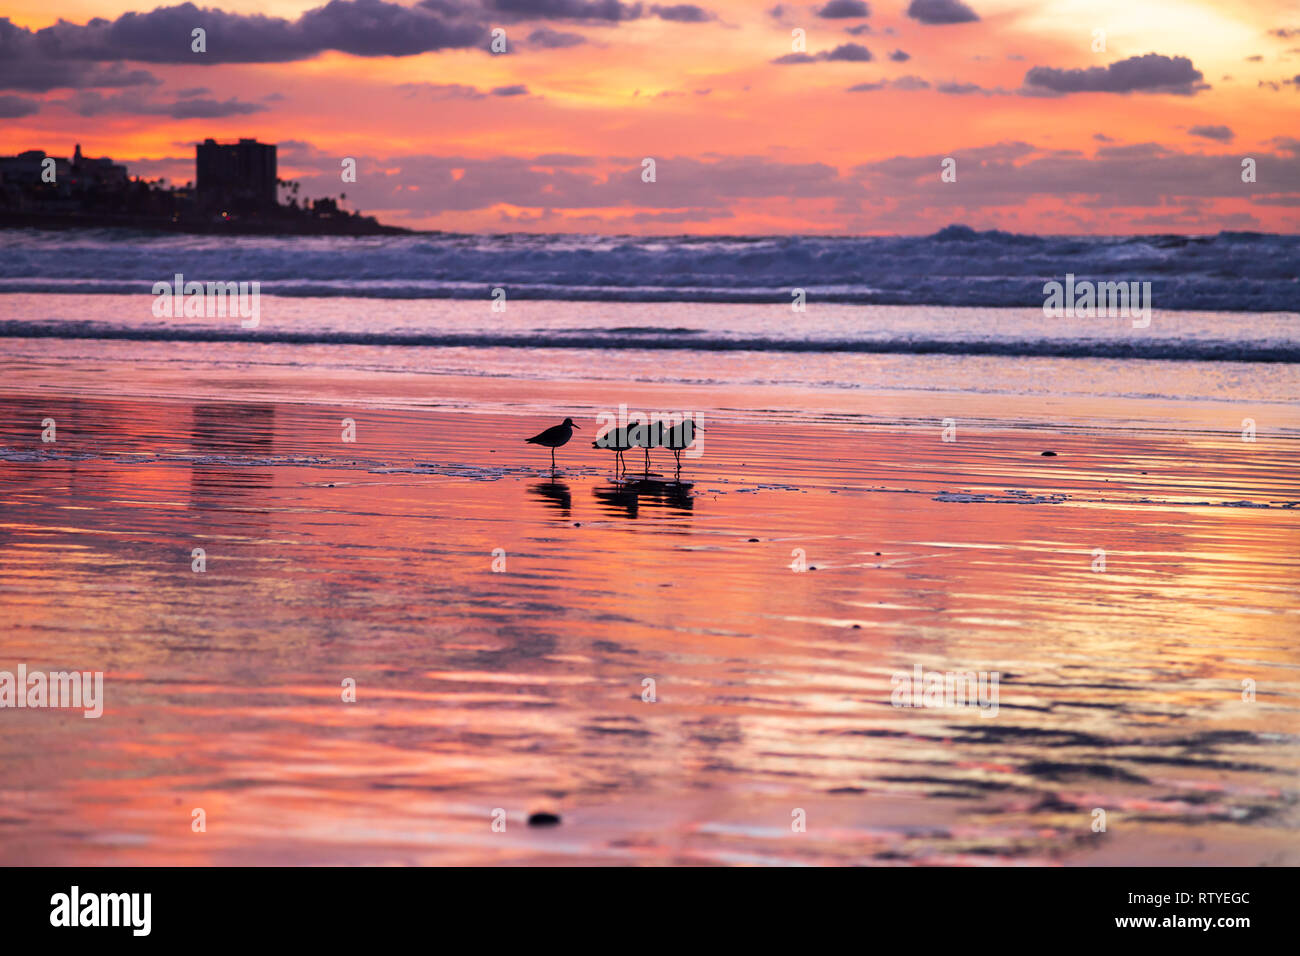 Sonnenuntergang in La Jolla Shores Beach mit vier Vögel und Red Sky in den nassen Sand reflektiert. La Jolla, San Diego, Kalifornien, USA Stockfoto